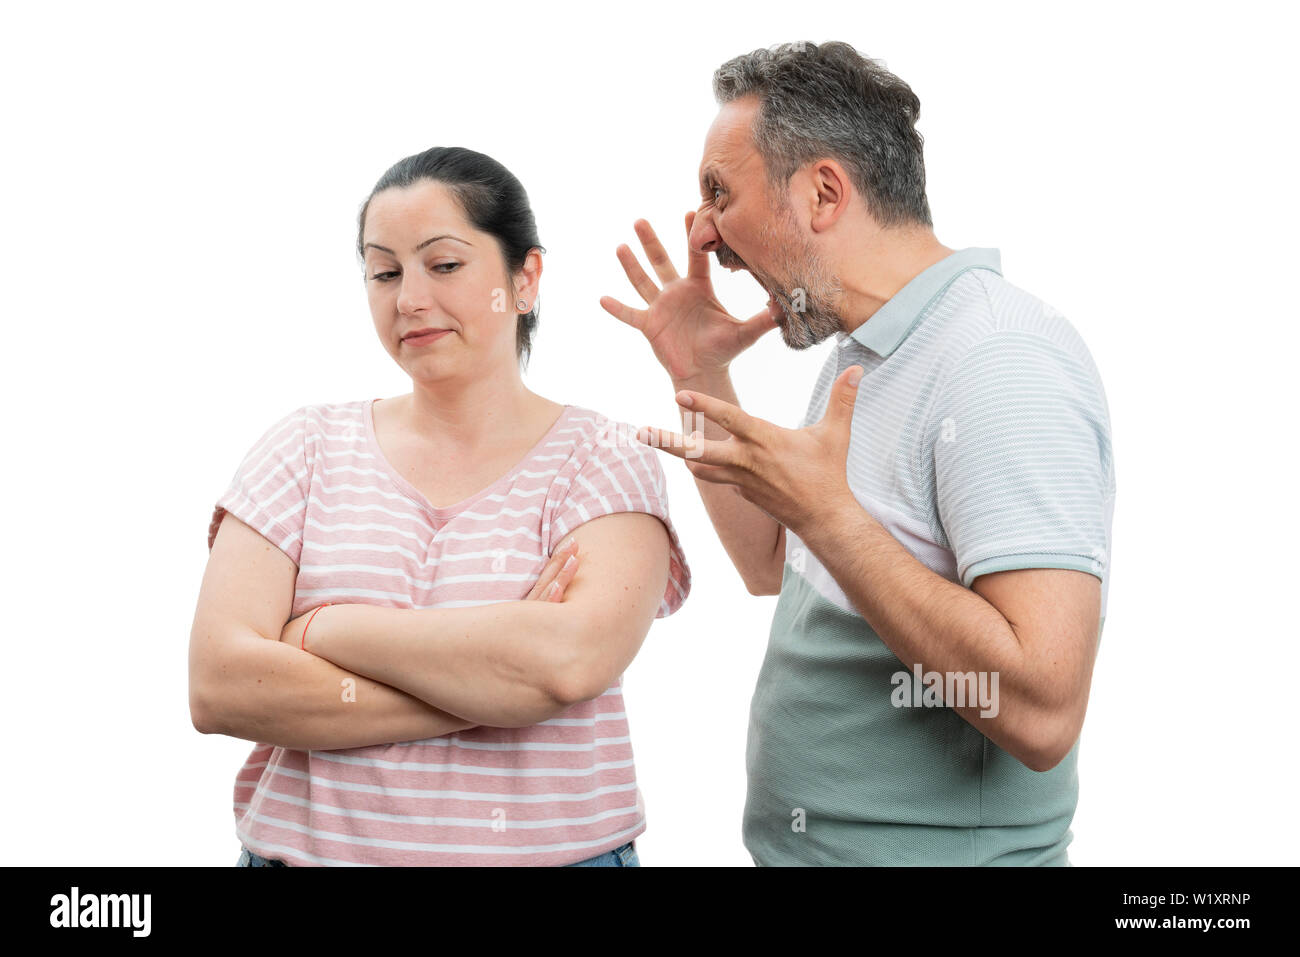 Infastiditi uomo che fa arrabbiare il gesto e grida di donna con espressione indifferente isolati su sfondo bianco Foto Stock